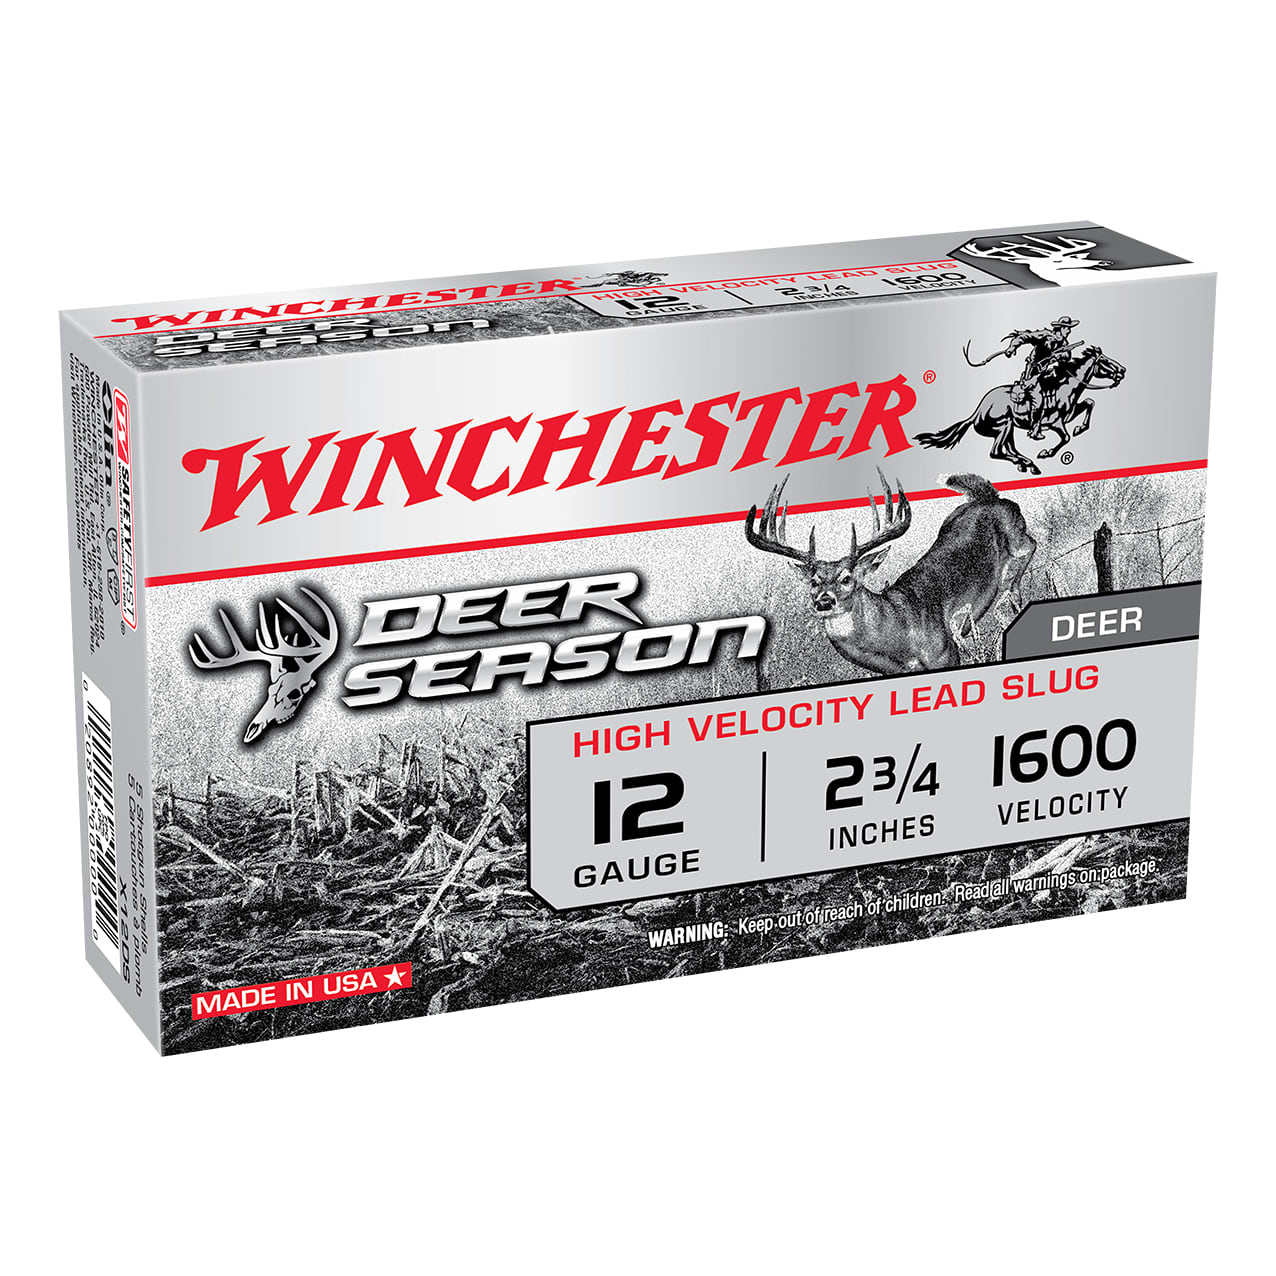 Winchester® Deer Season 12 Gauge Slugs